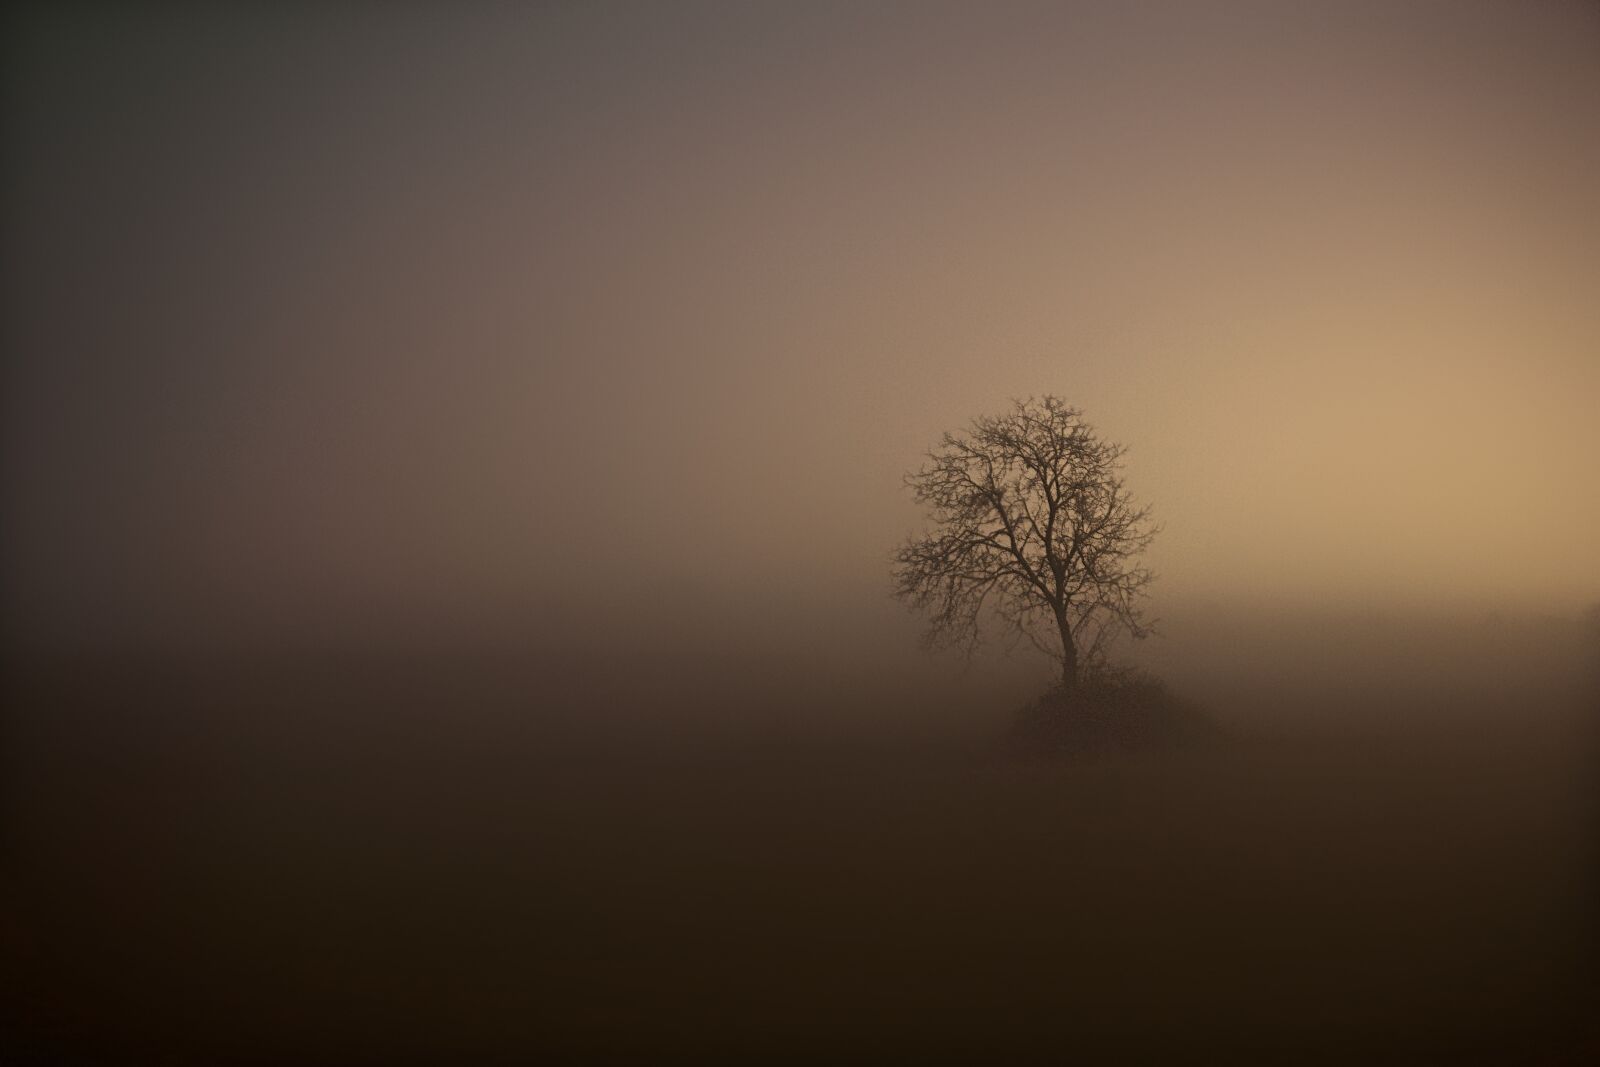 Sony E 18-50mm F4-5.6 sample photo. Fog, tree, night photography